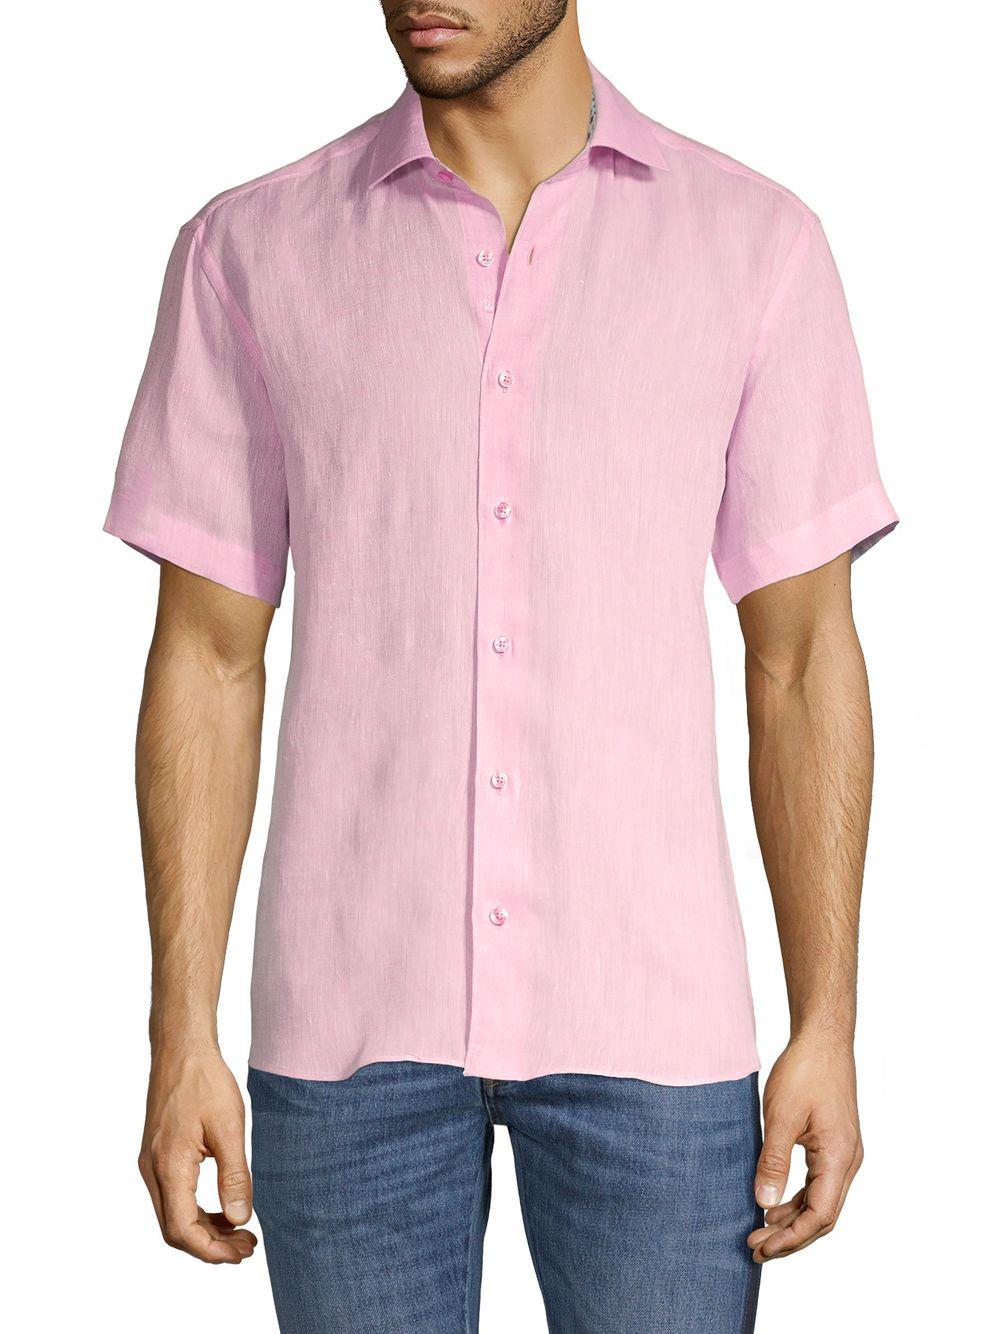 Bertigo Edoardo Linen Sport Shirt in Pink for Men - Lyst